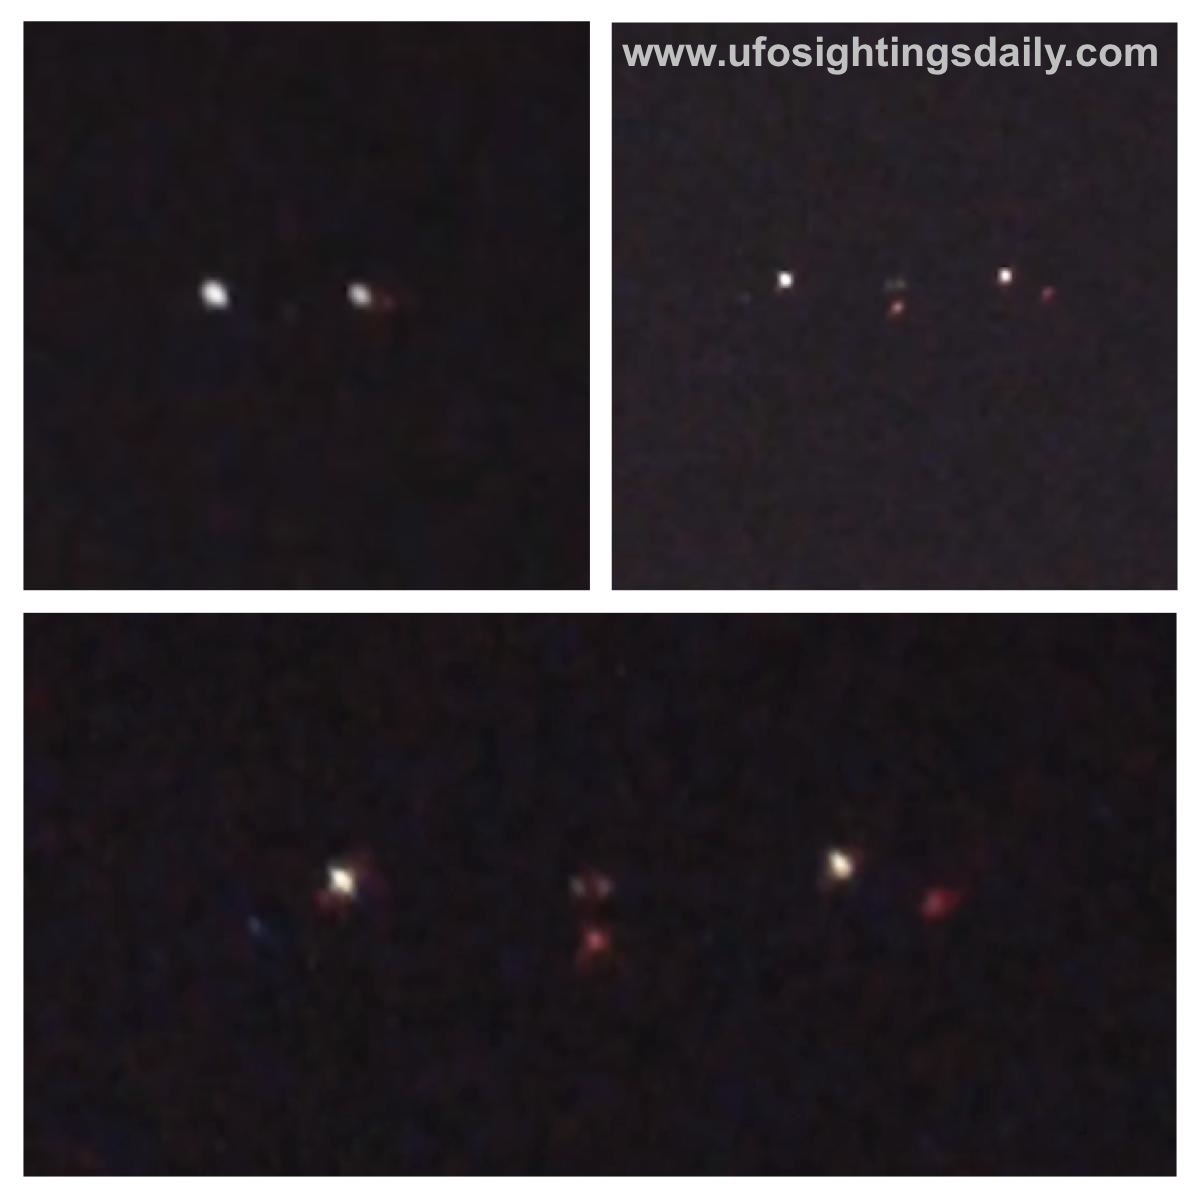 http://4.bp.blogspot.com/-ujPKKmcL6XM/UMAmq8NhDJI/AAAAAAAAMSs/1RdaW9jl_7g/s1600/ovni,+omni,+space,+alien,+aliens,+ET,+Angelina+Jolie,+Justin+Bieber,+Texas,+dec,+2012,+UFO,+UFOs,+sighting,+sightings,+nasa,+military,+drone,+tr3b,+historic,+Mars,+rover.jpg